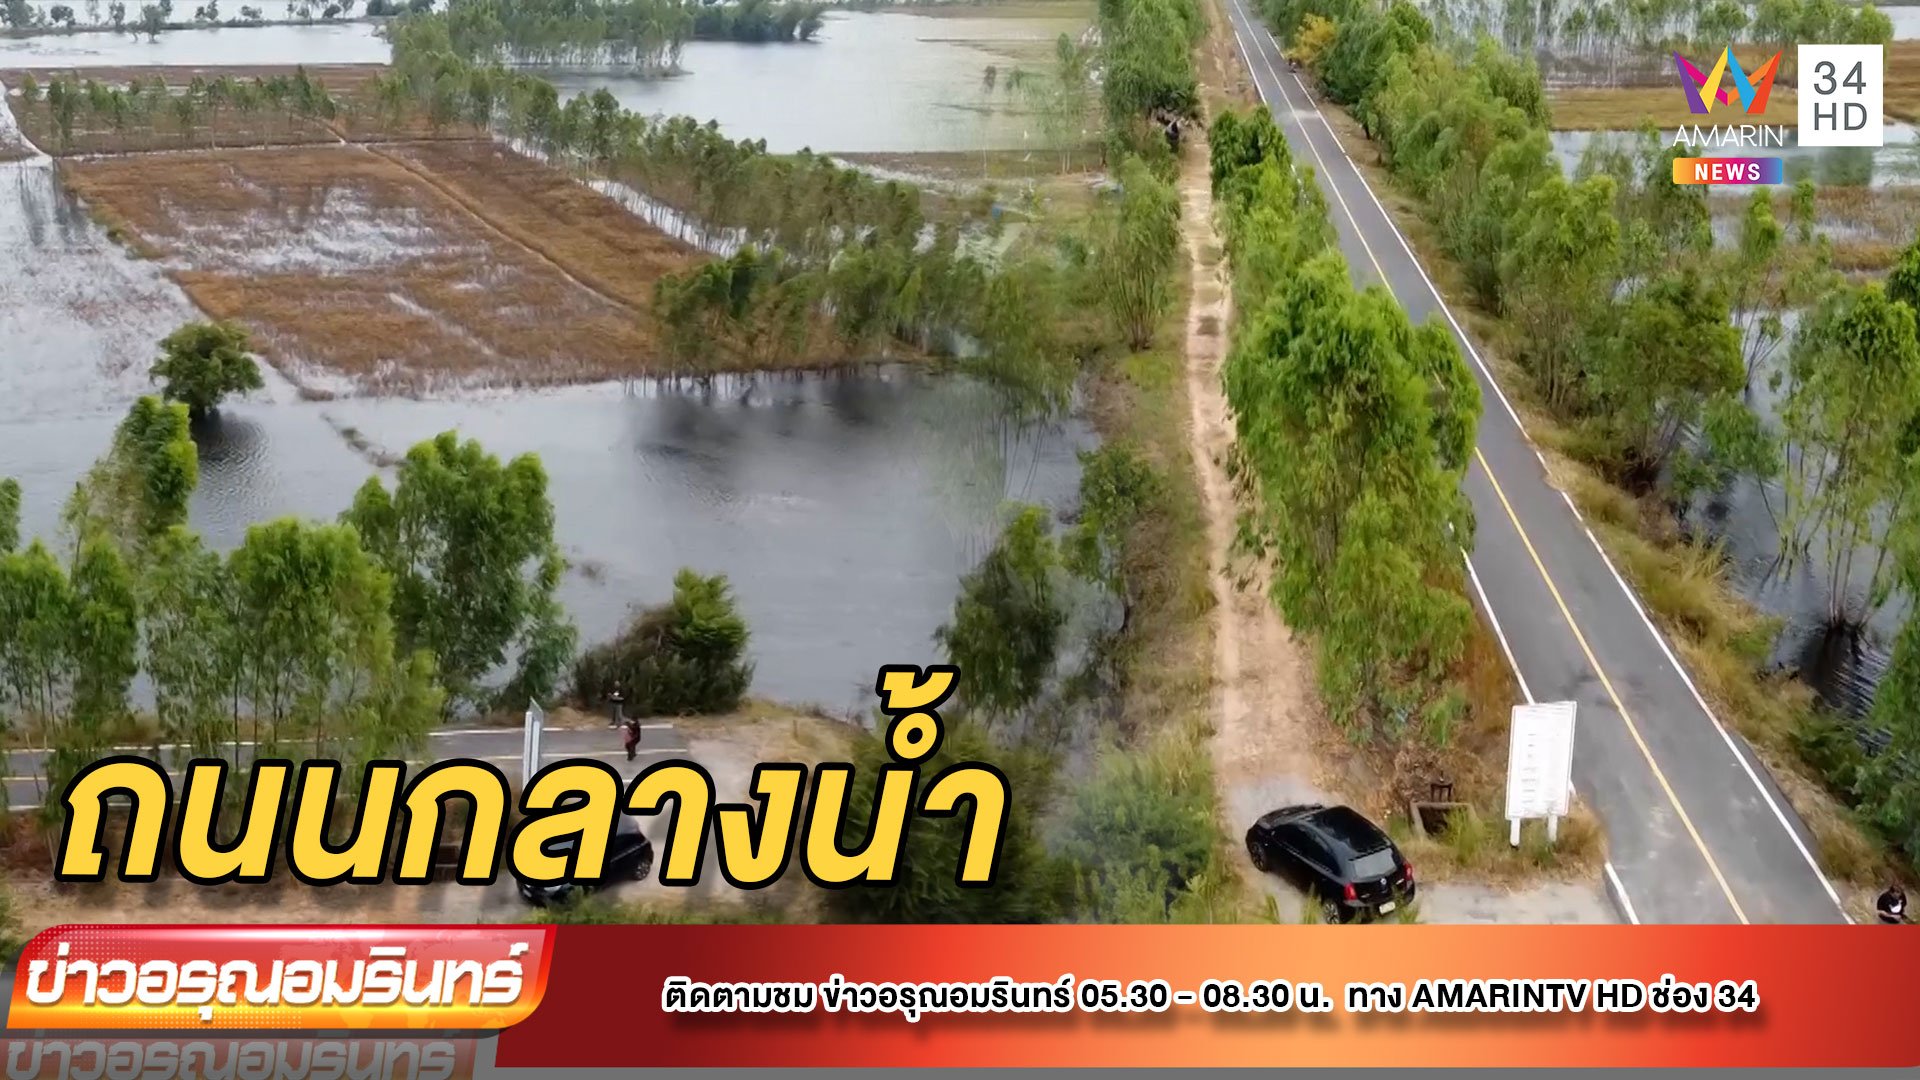 โผล่อีก! ถนนลาดยางสุดทางกลางน้ำ ไปต่อไม่ได้ ไร้คนรับผิดชอบ | ข่าวอรุณอมรินทร์ | 1 ธ.ค. 64 | AMARIN TVHD34